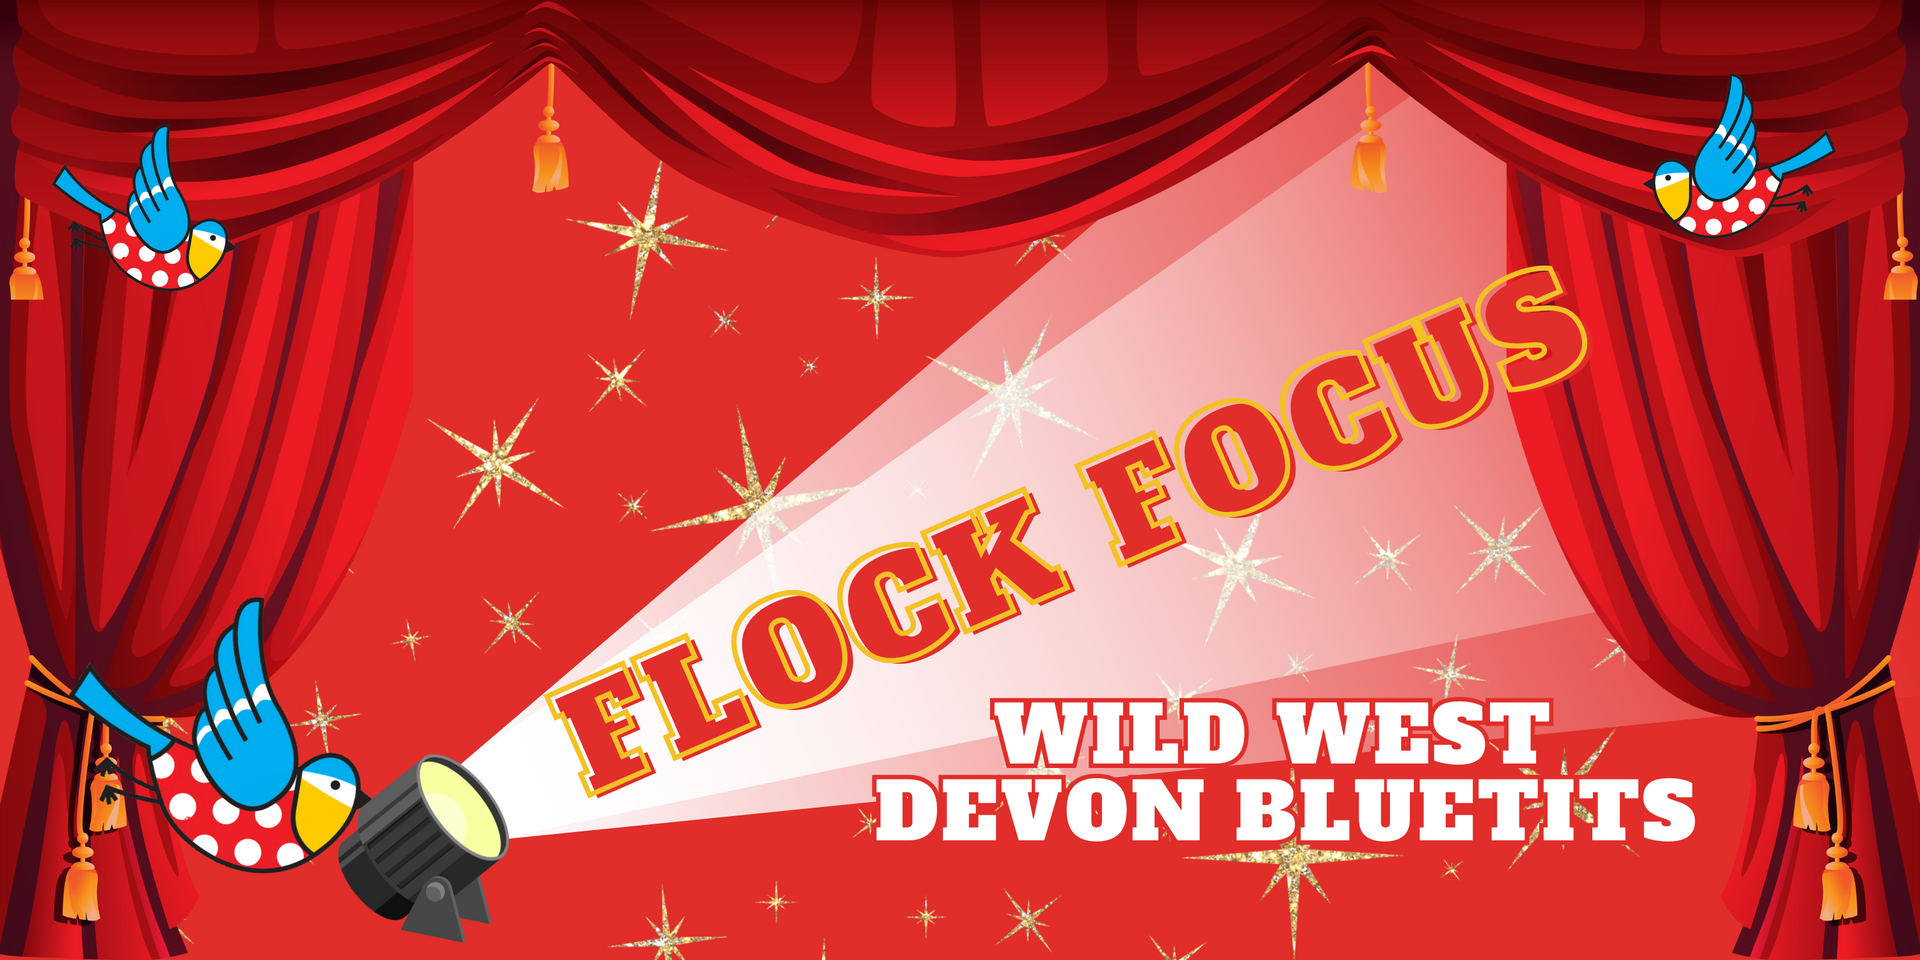 Flock Focus - Wild West Devon Bluetits